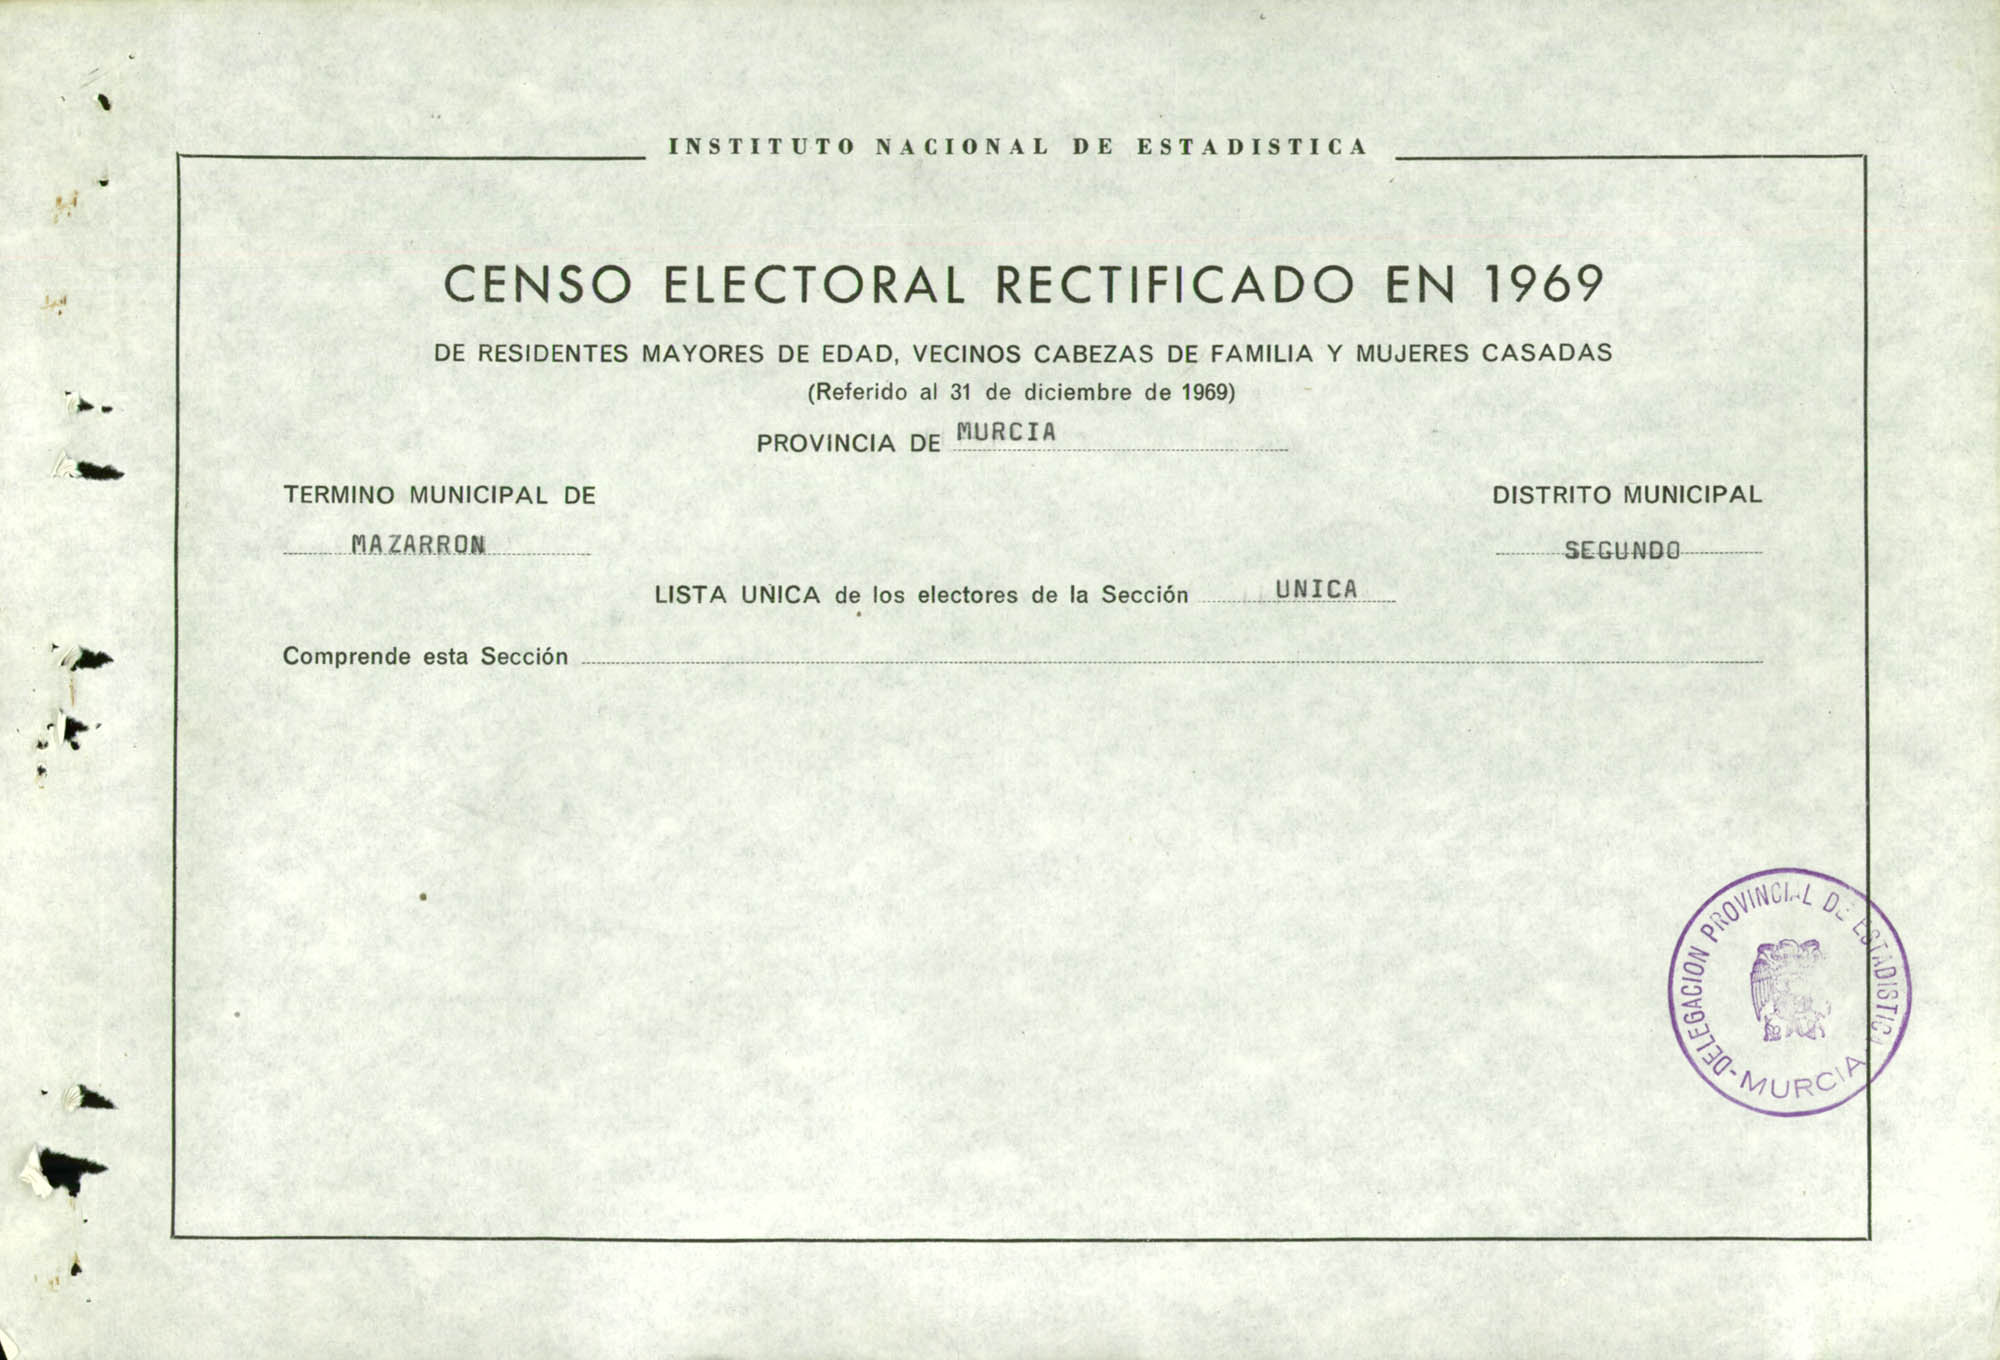 Censo electoral rectificado en 1969: listas definitivas de Mazarrón, Distrito 2º, sección única.